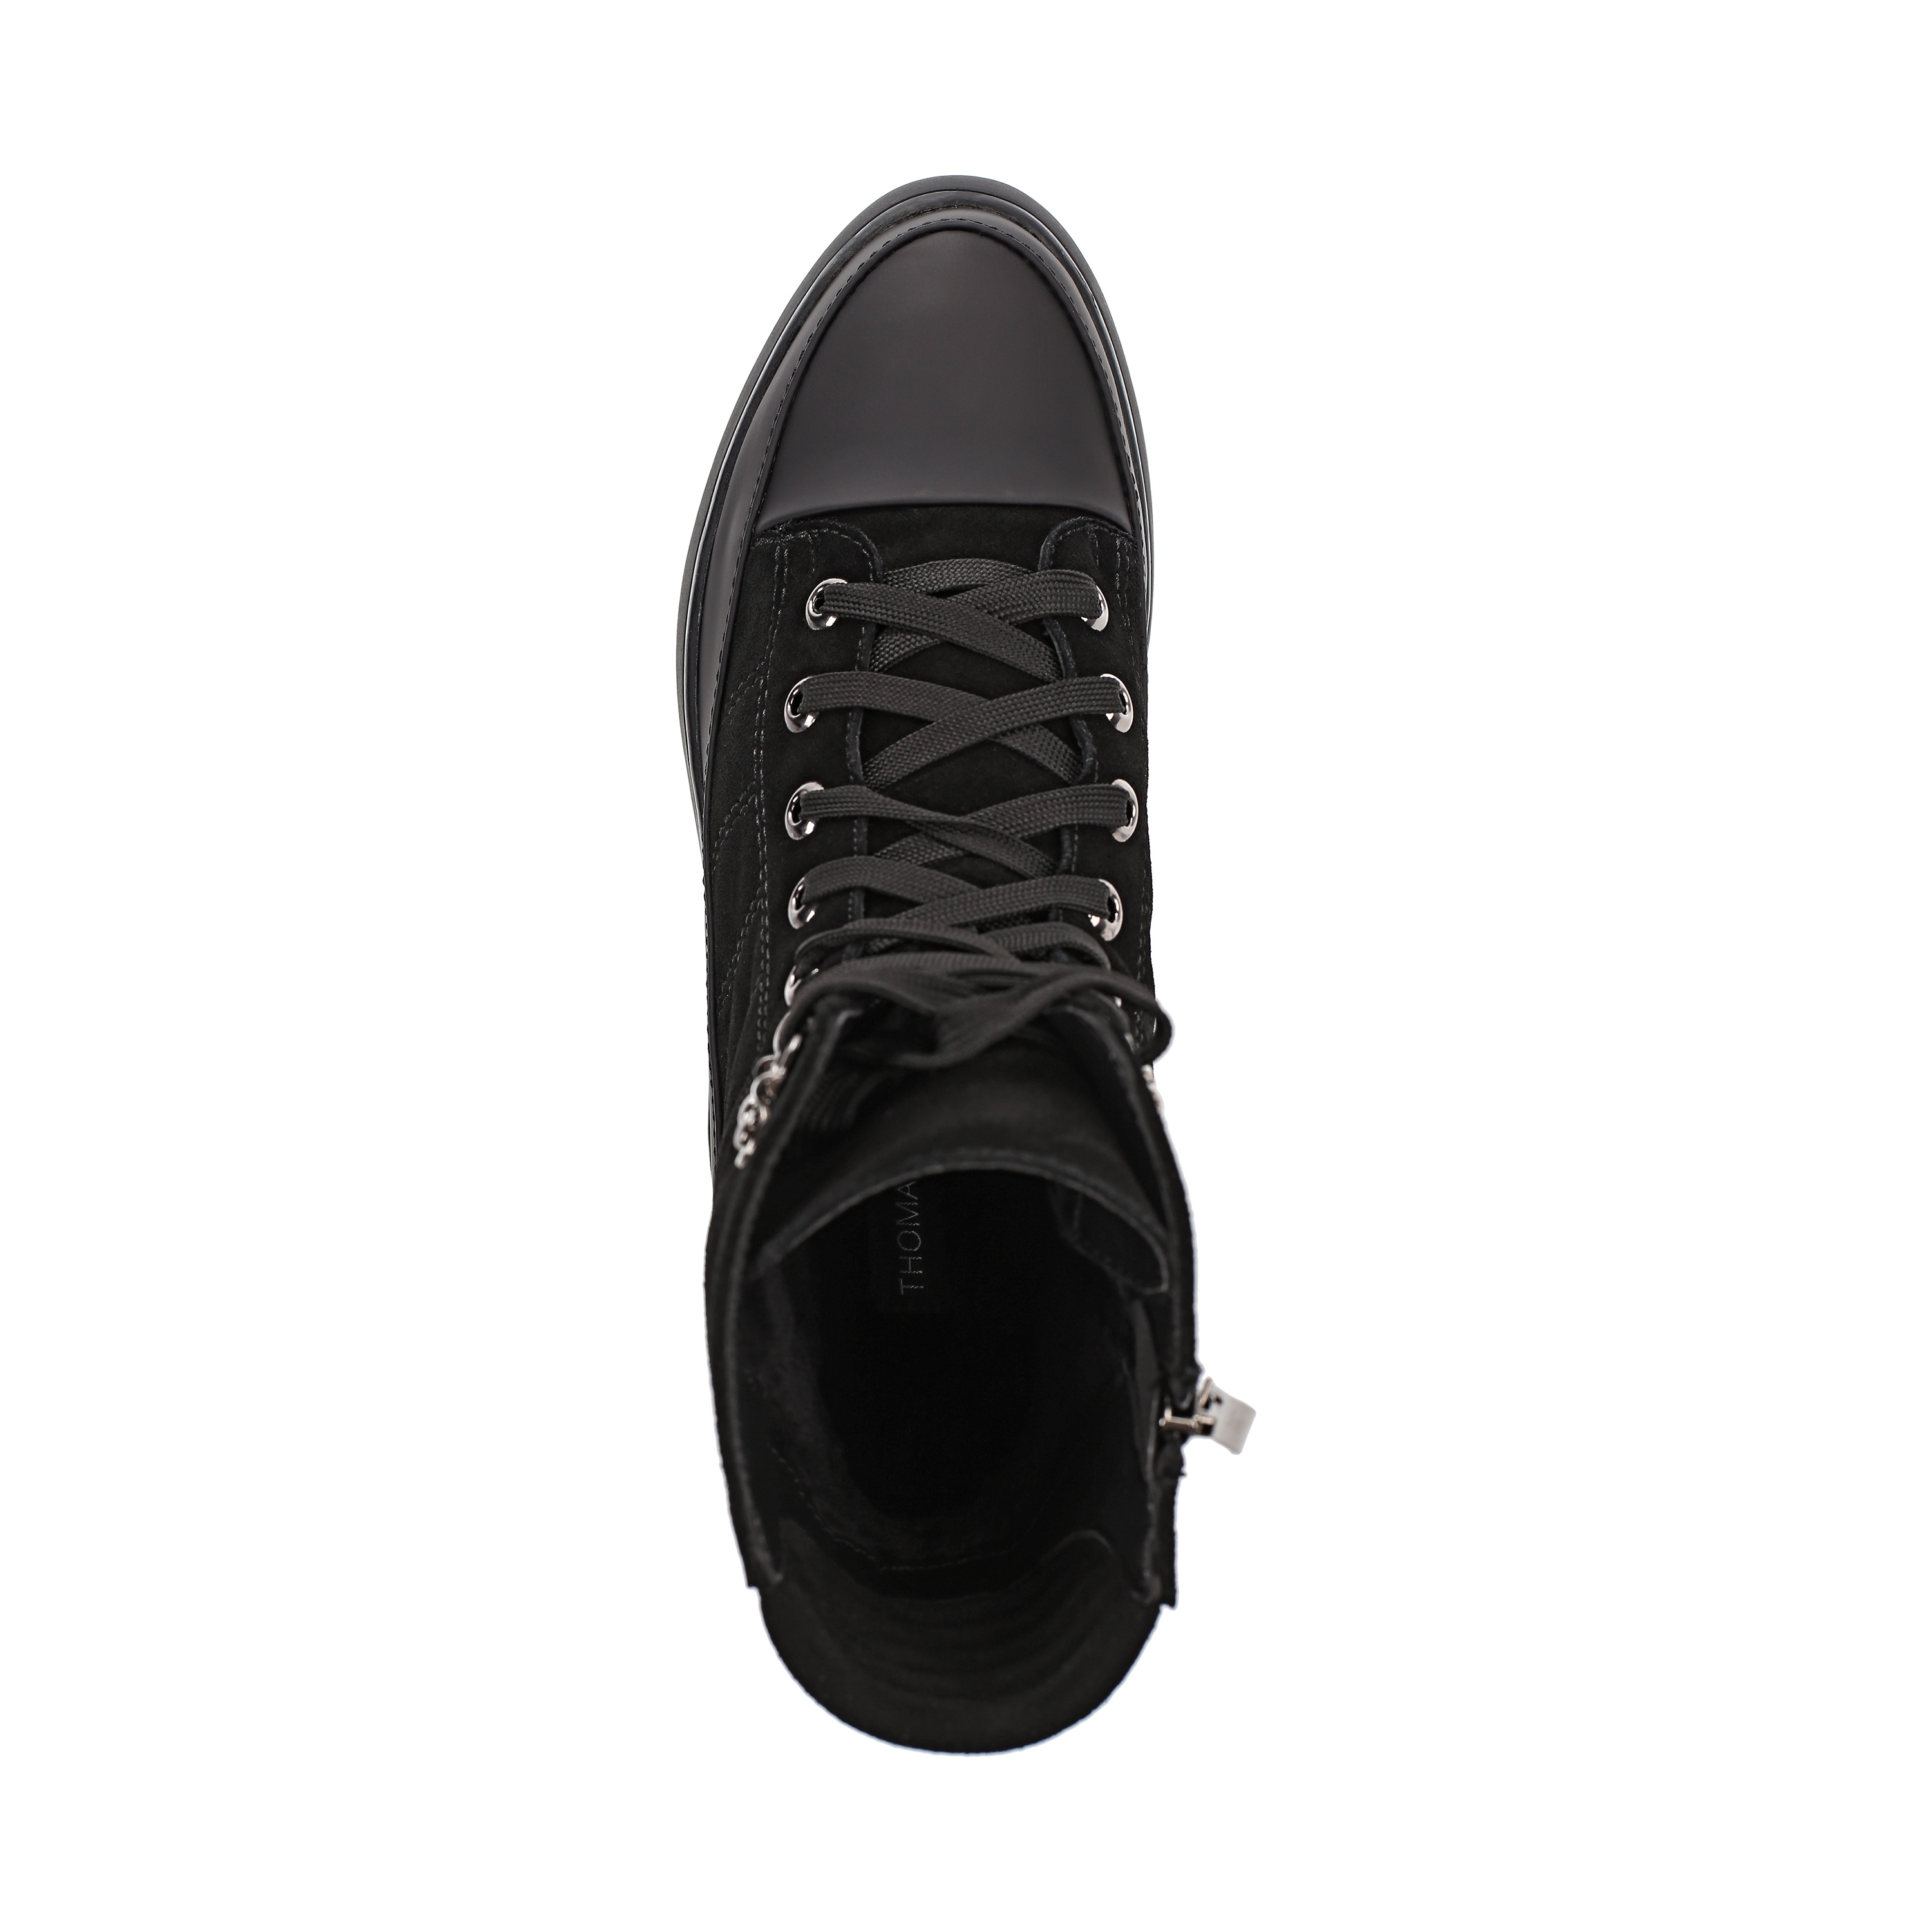 Ботинки Thomas Munz 233-584A-30202 233-584A-30202, цвет черный, размер 38 ботинки актив - фото 5